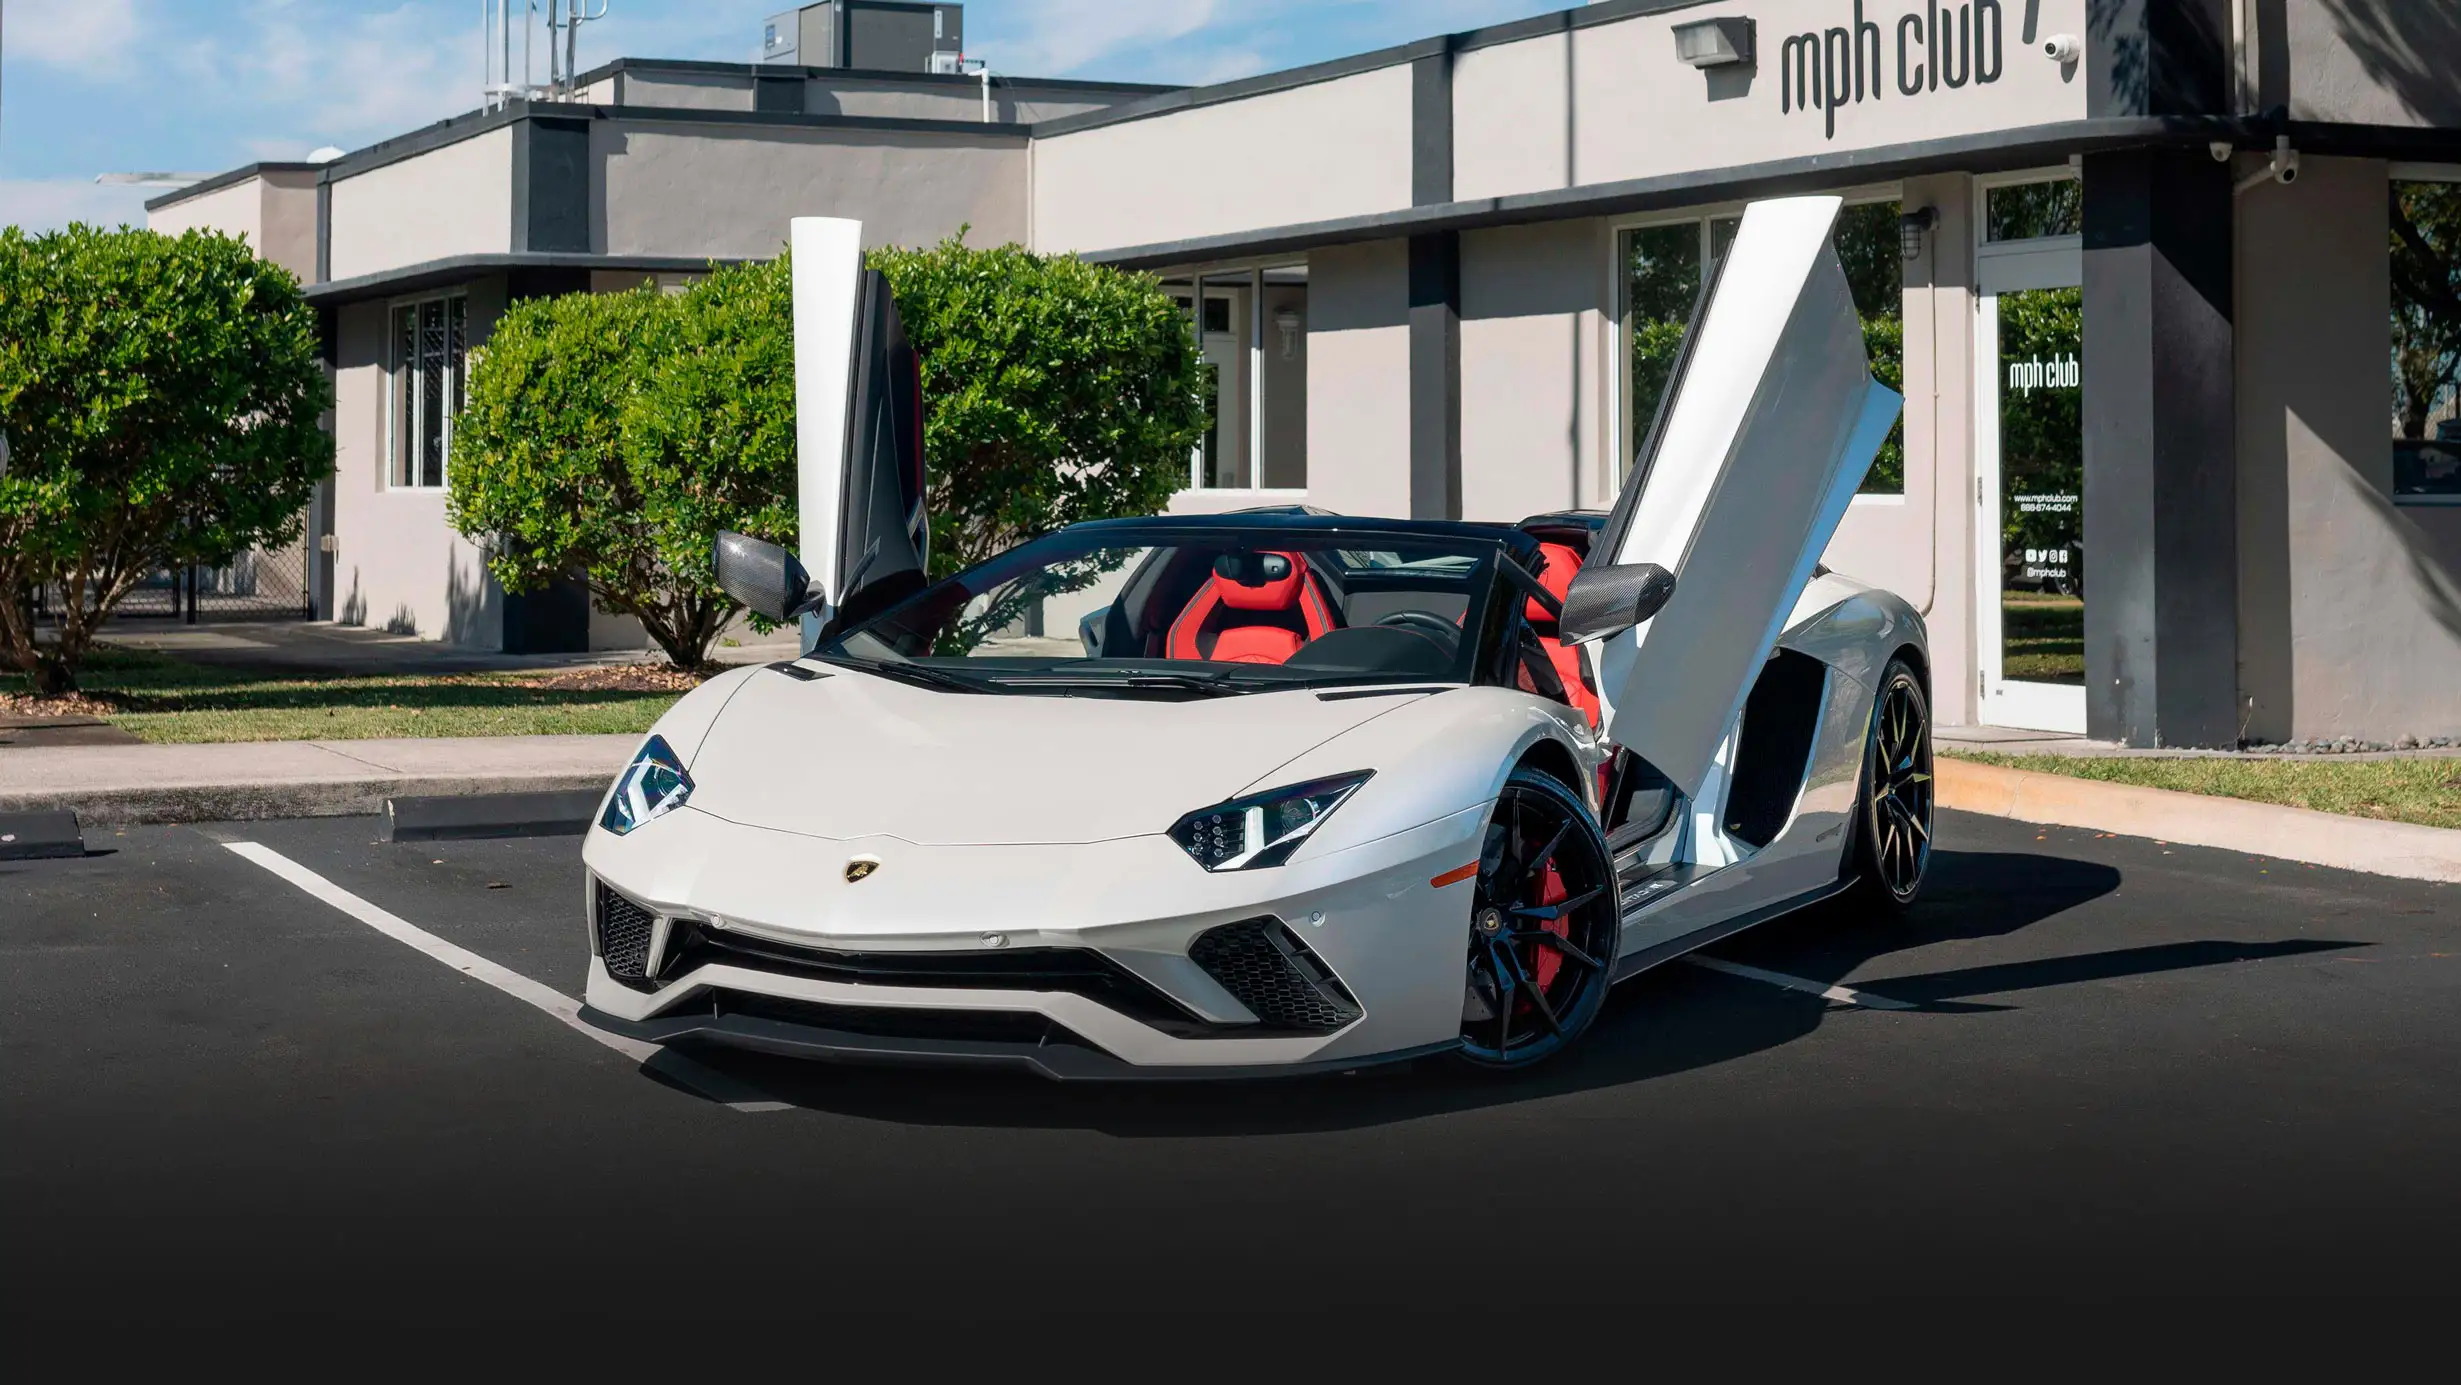 White Lamborghini Aventador S Roadster for rent Miami profile view mph club